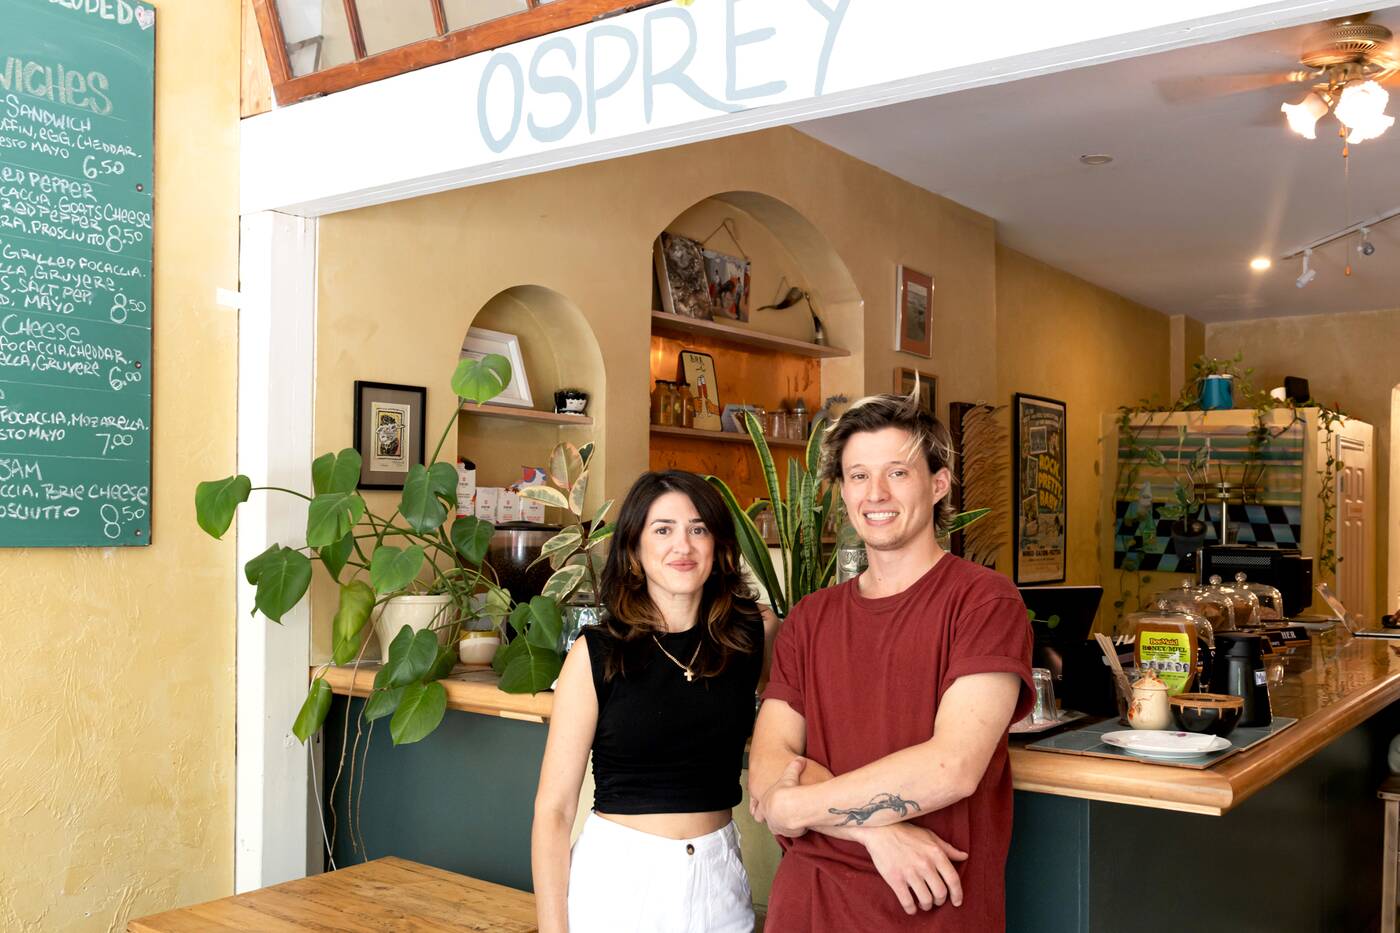 Osprey Cafe